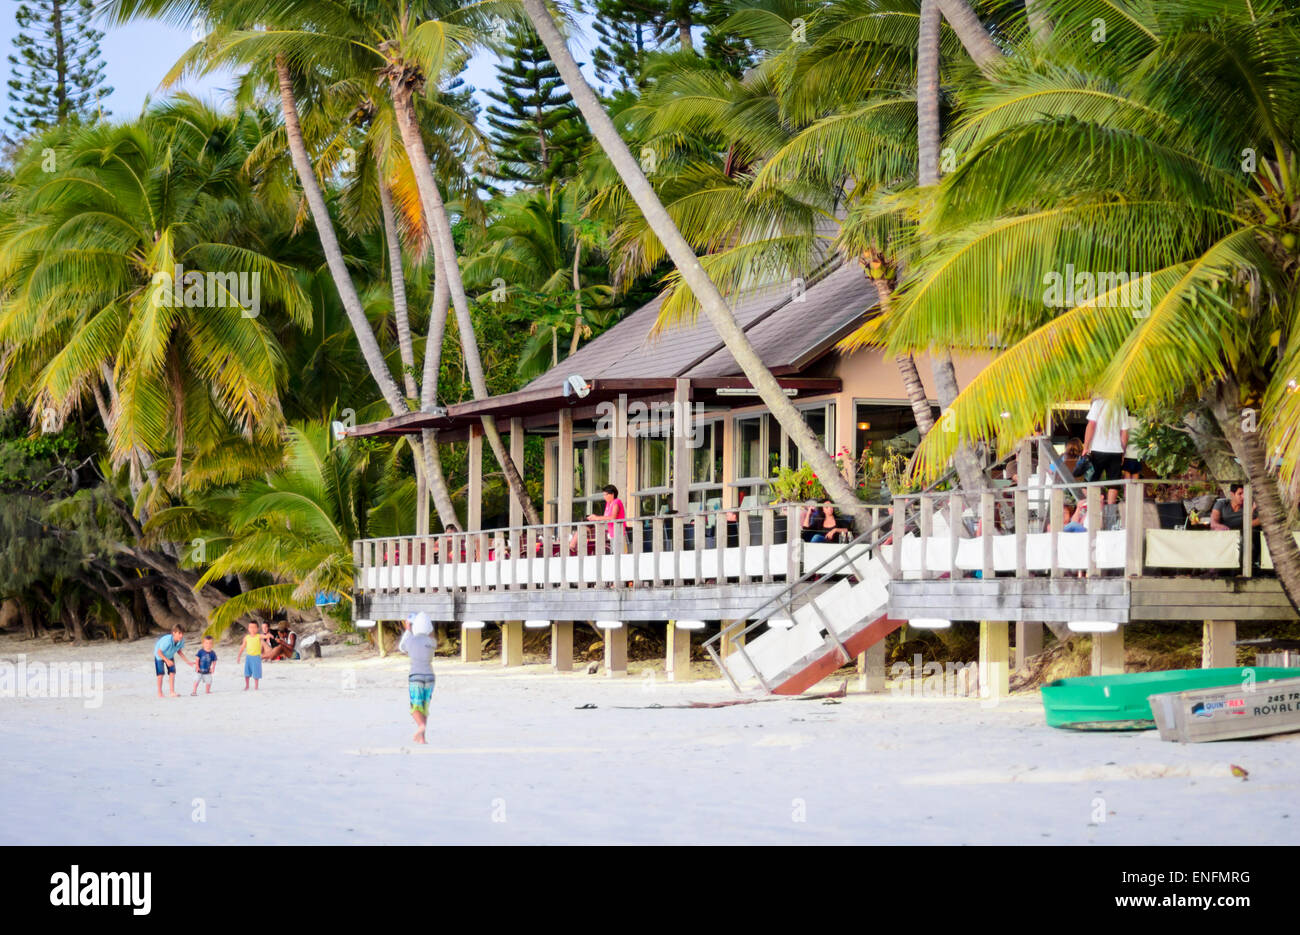 Rústico restaurante de playa resguardada por palmeras, en una hermosa isla tropical. Isla de Los Pinos, Nueva Caledonia, el sur del Pacífico. Foto de stock